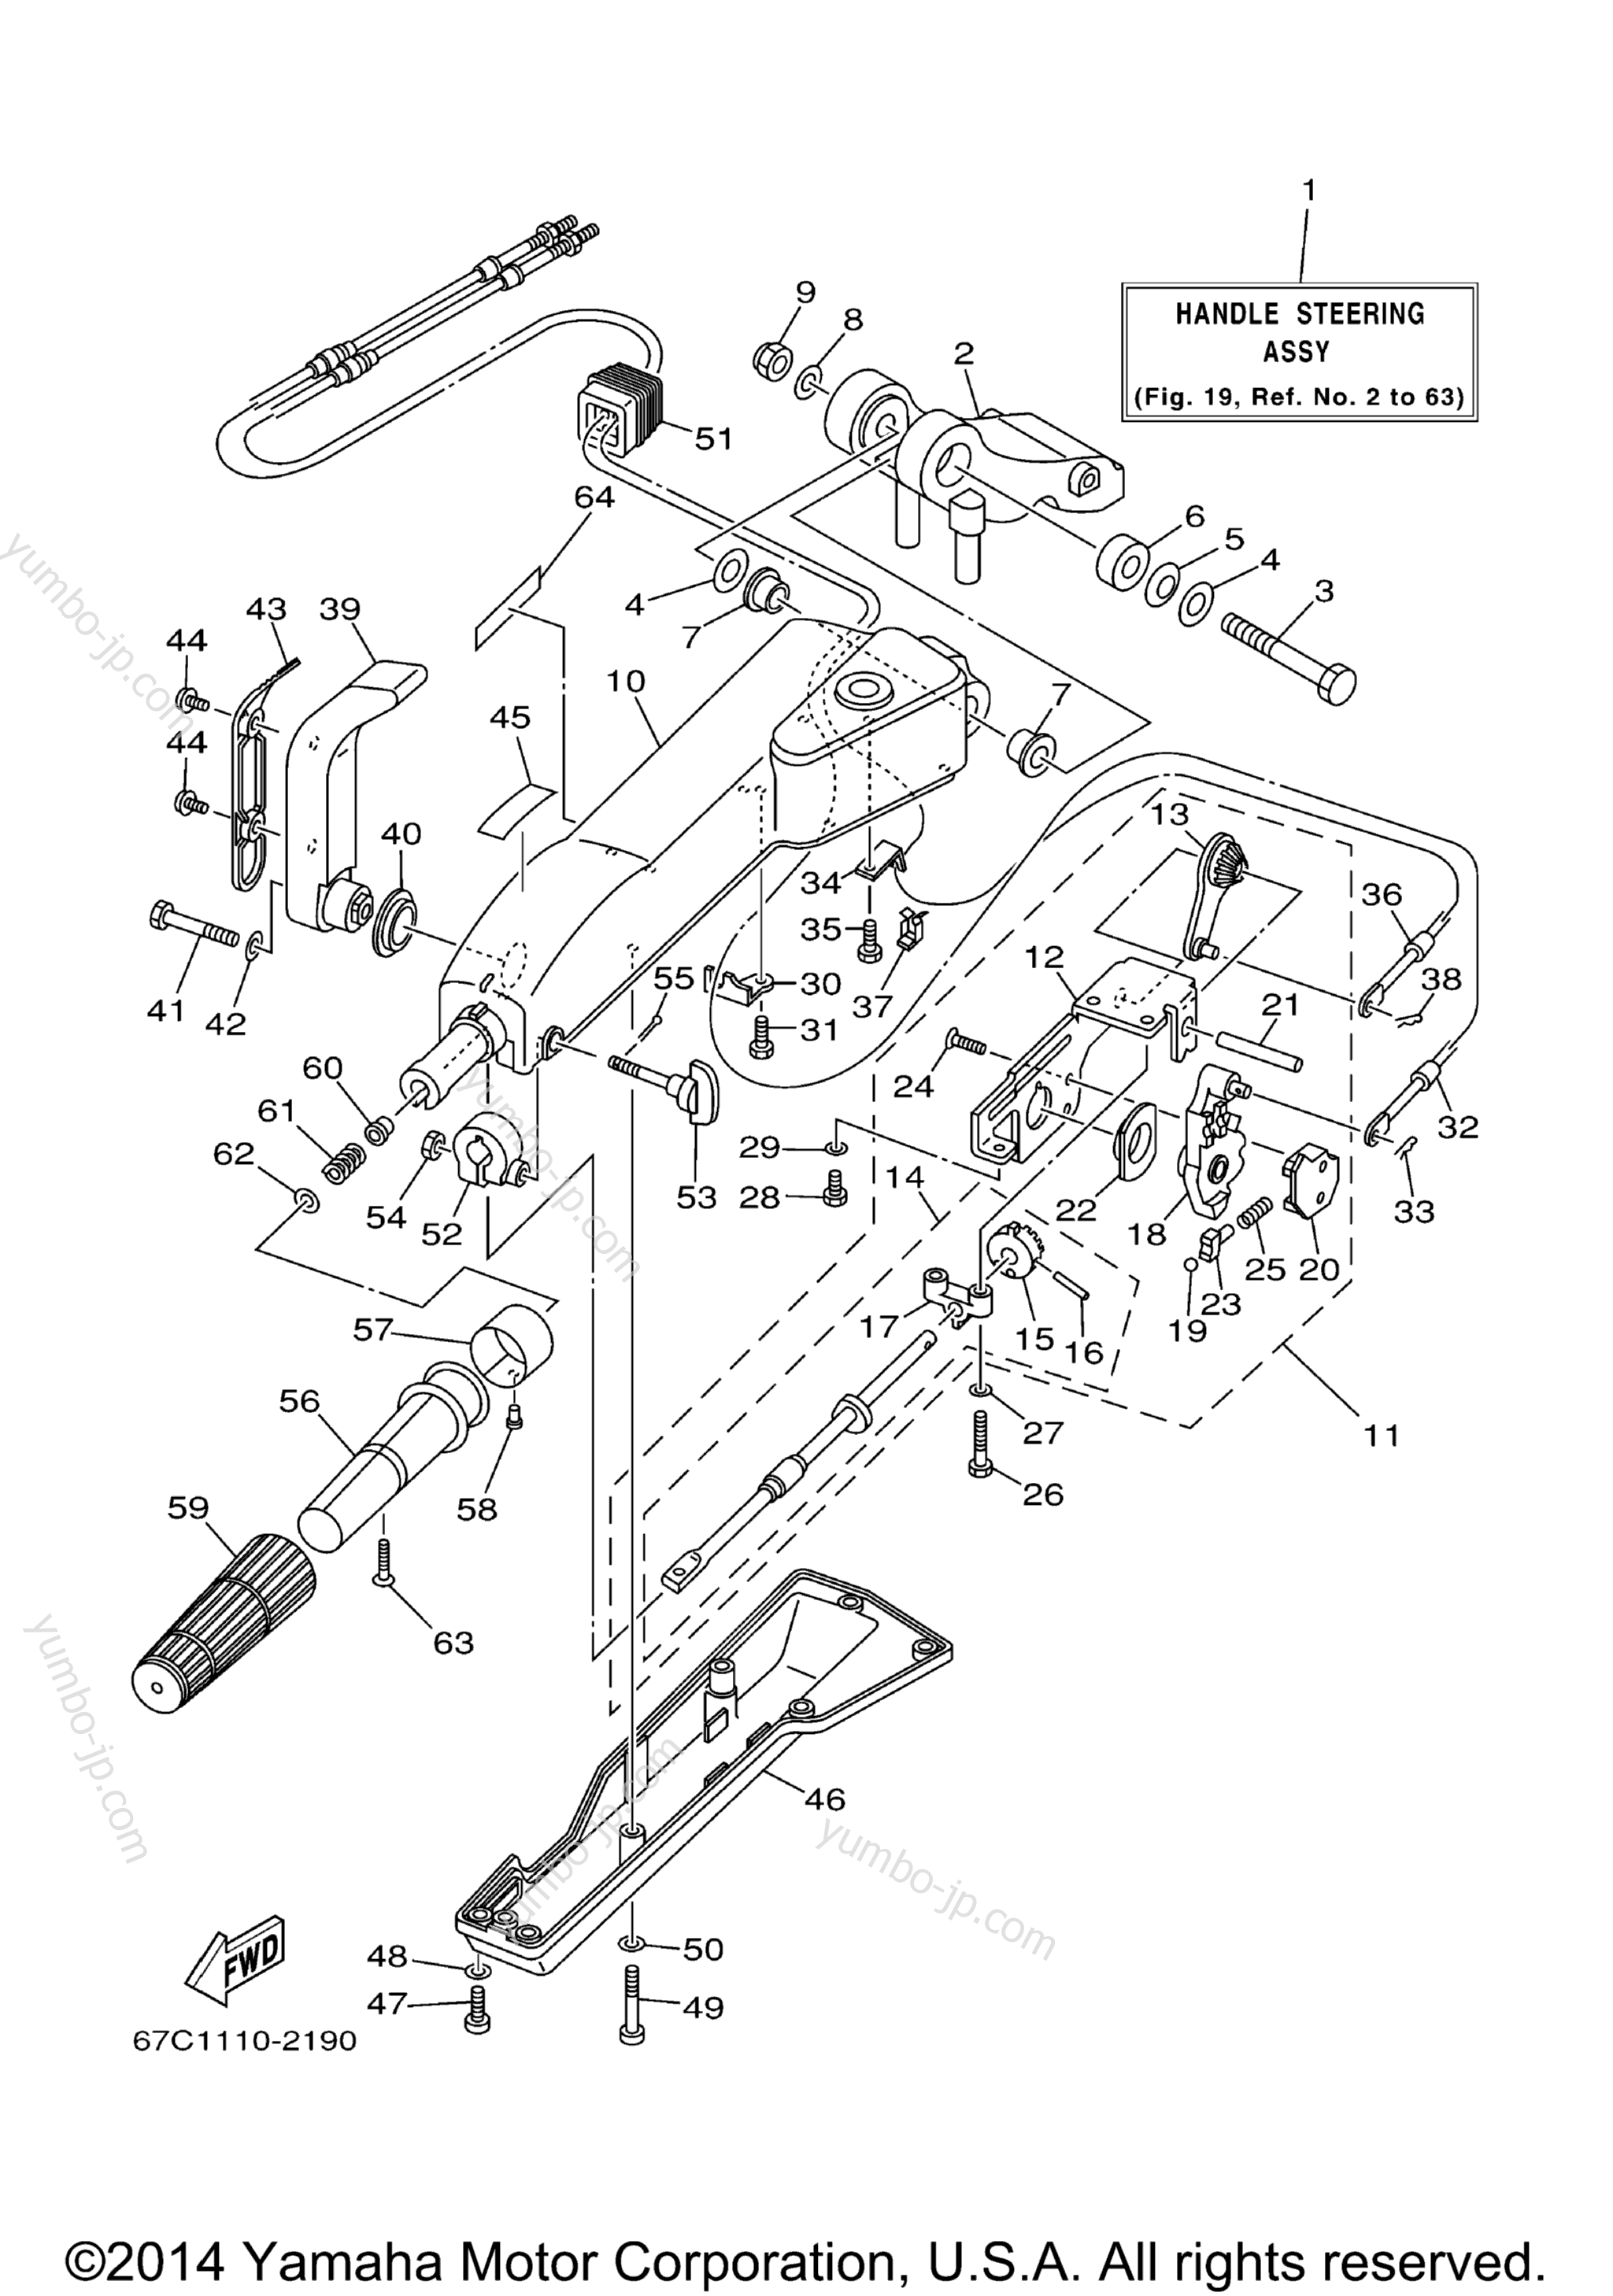 Steering Mh для лодочных моторов YAMAHA F40MSHB_MLHB_MJHB_EJRB_ESRB_TLRB (F30TLRB) 2003 г.